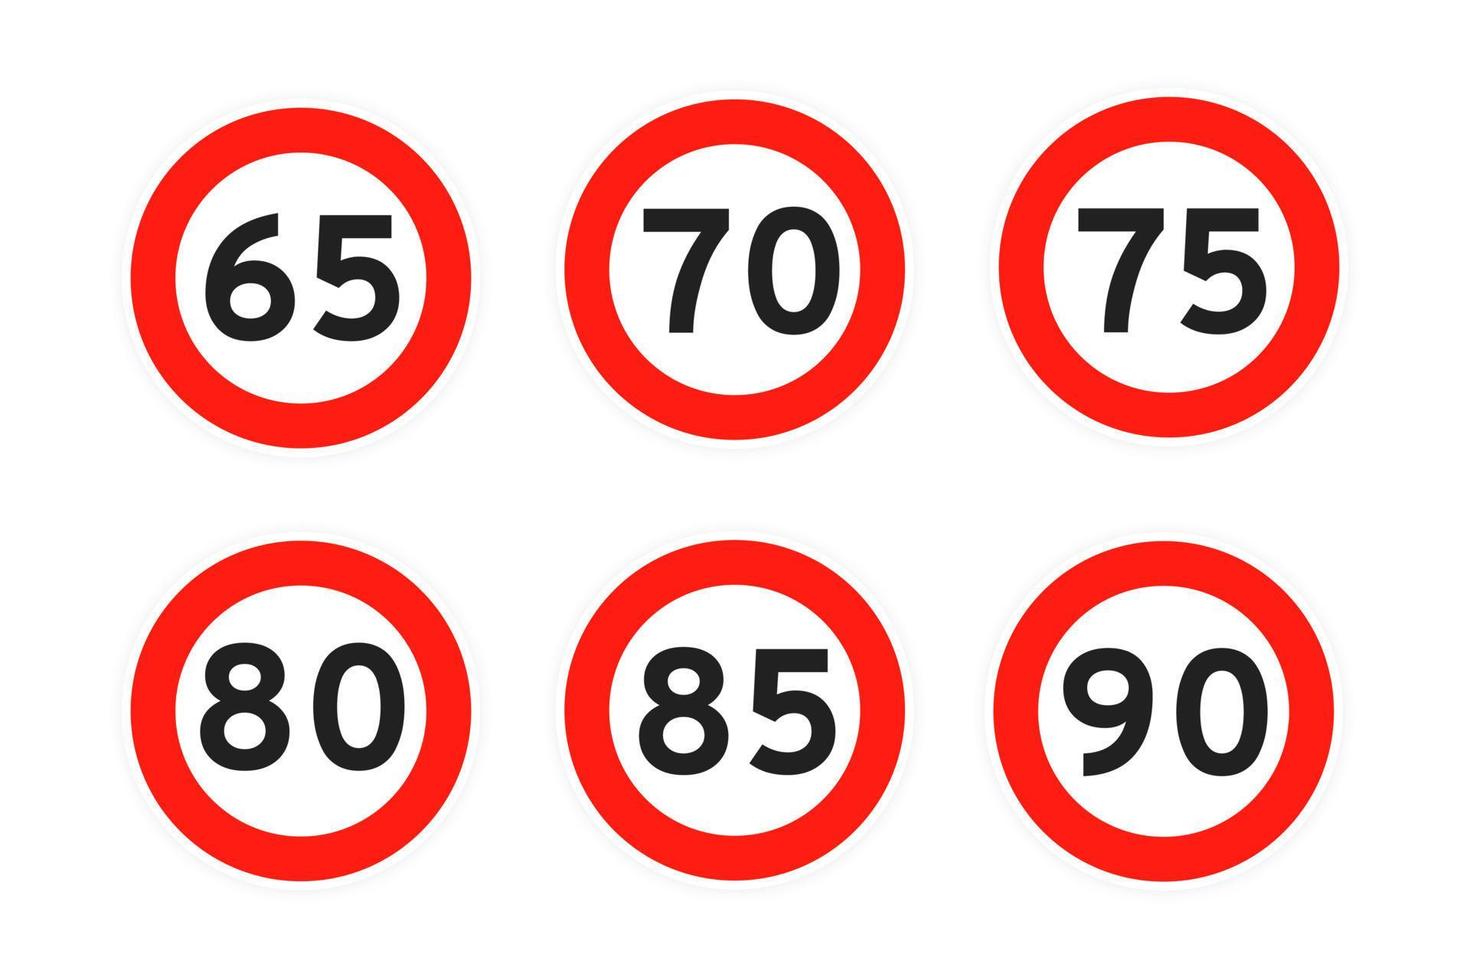 límite de velocidad 65, 70, 75, 80, 85, 90 icono de tráfico de carretera redondo signo estilo plano diseño vector ilustración conjunto.